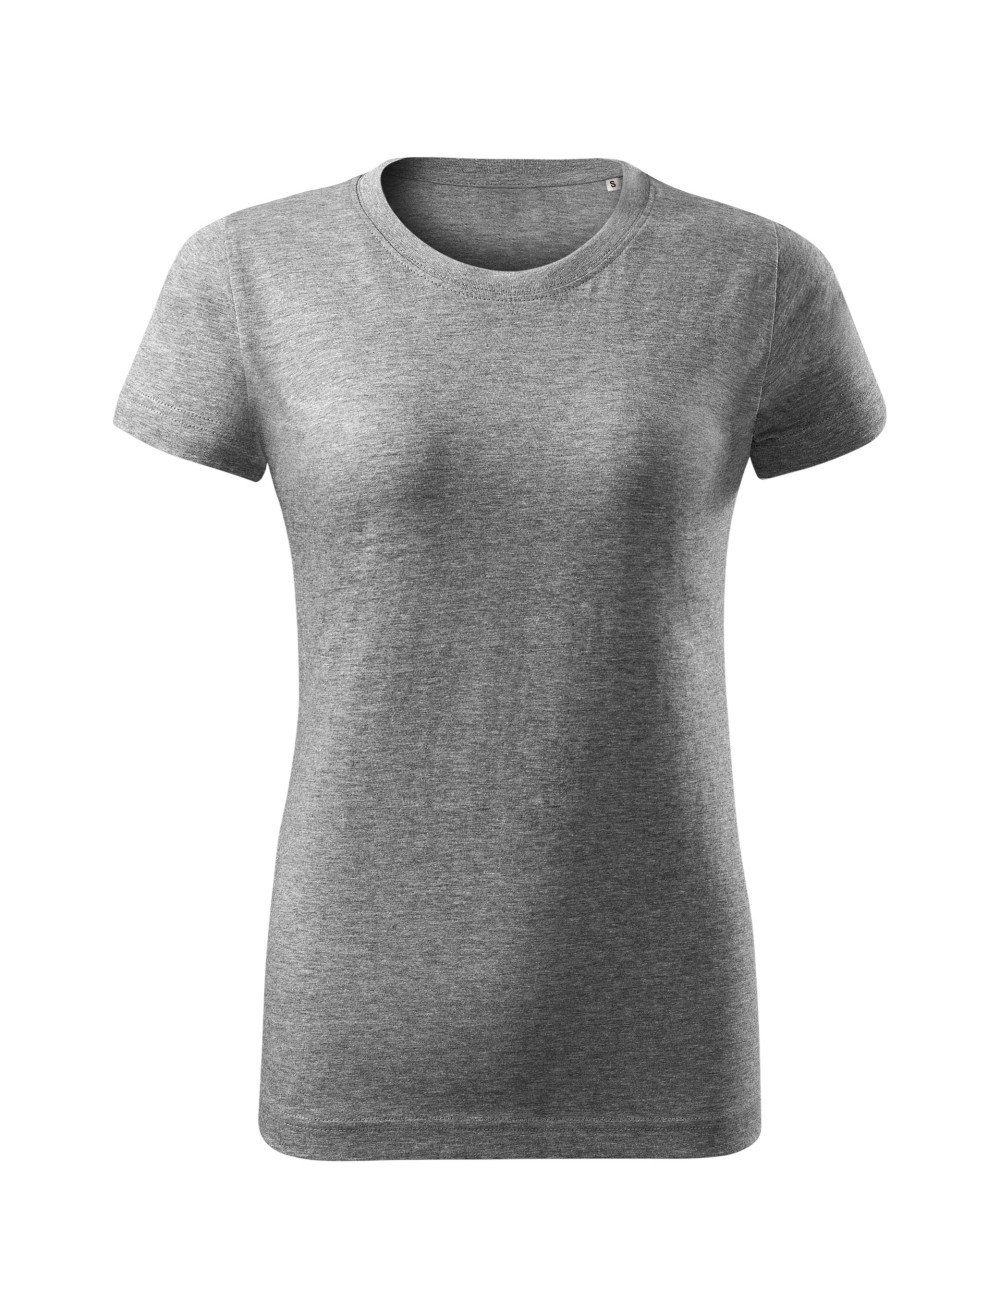 Women`s basic free f34 t-shirt, dark gray melange, Malfini